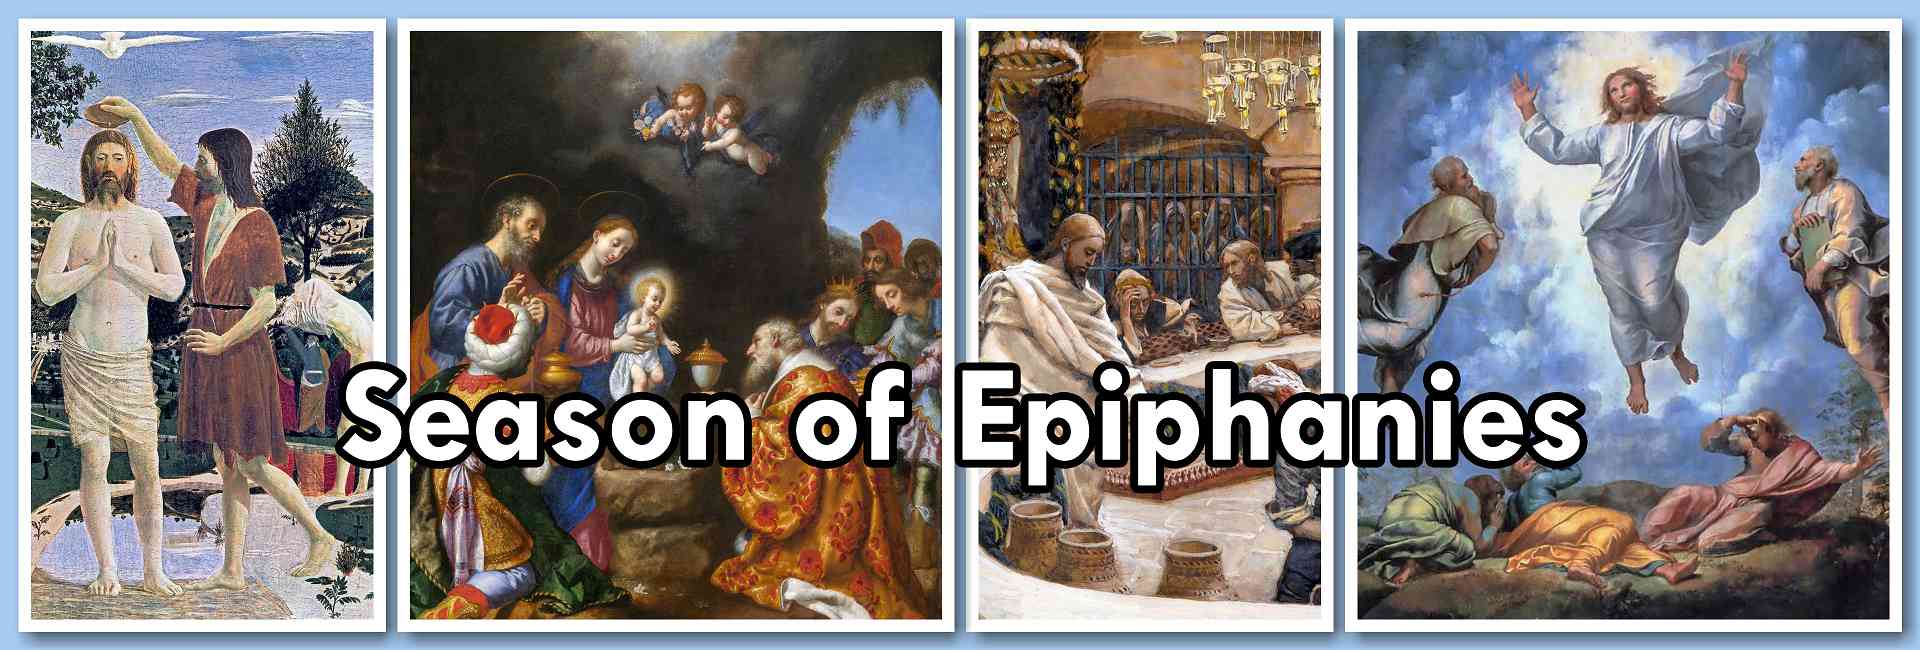 Season of Epiphanies